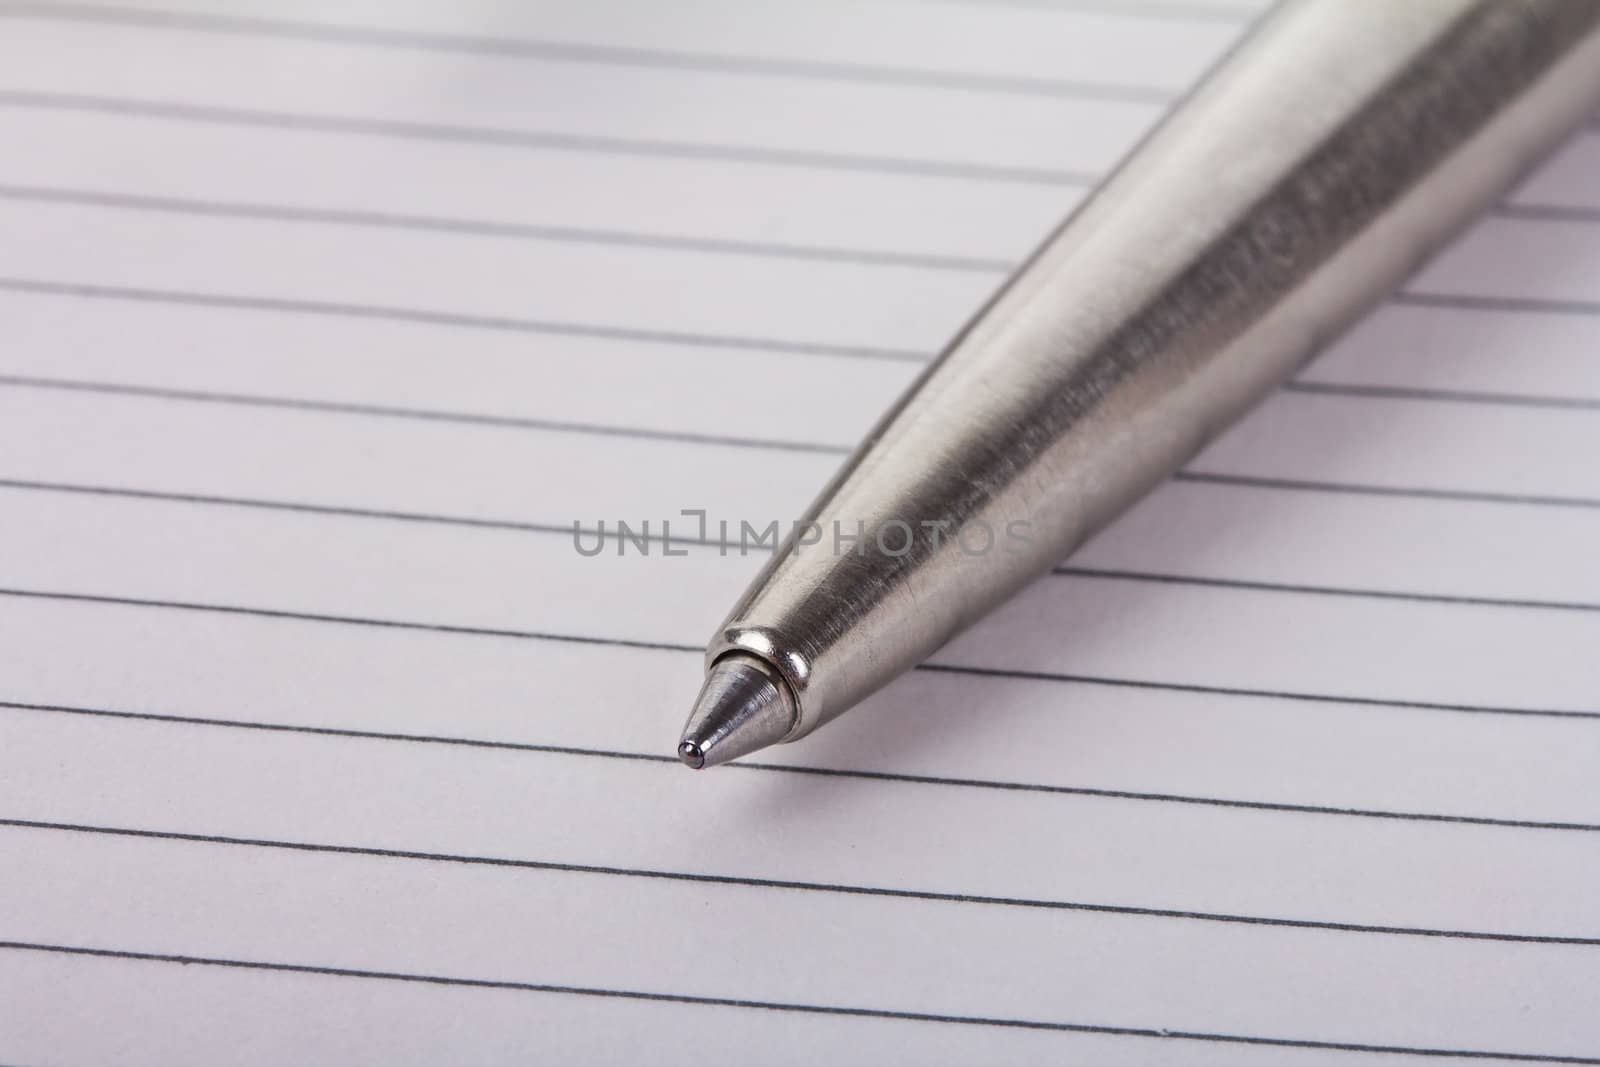 pen on sheet of paper by Alekcey